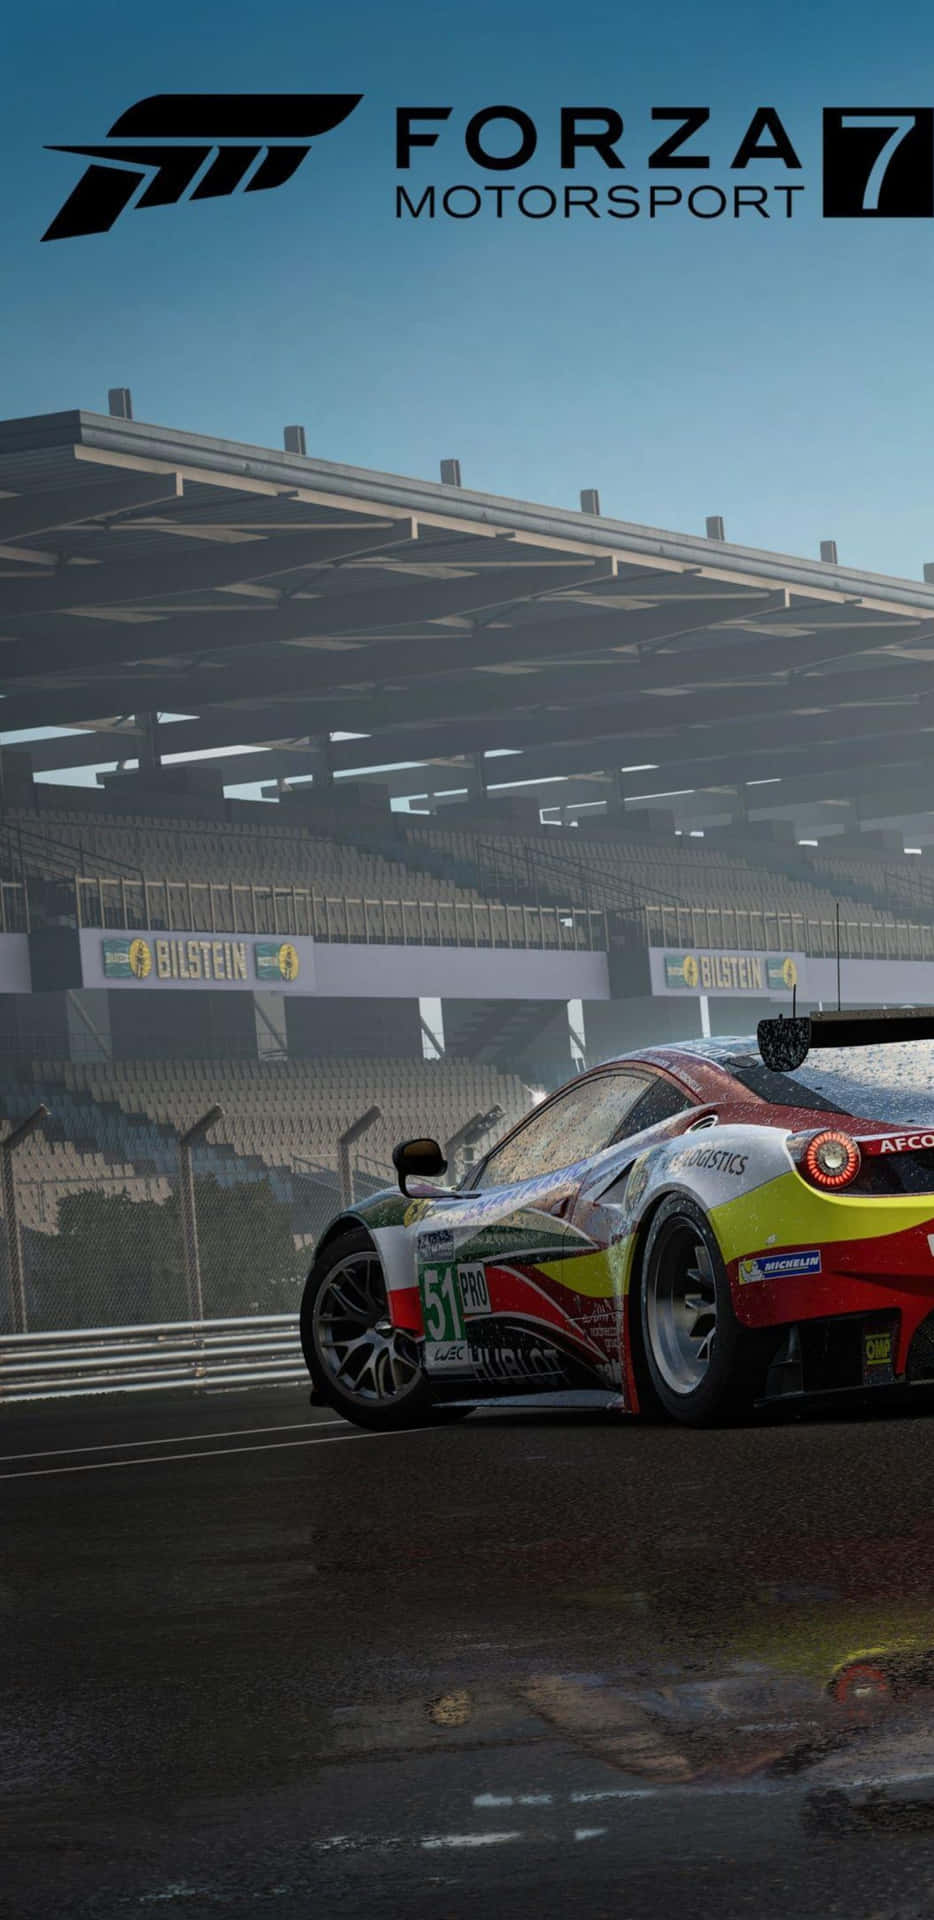 Demuestratus Habilidades En Los Límites Del Pixel 3xl Forza Motorsport 7